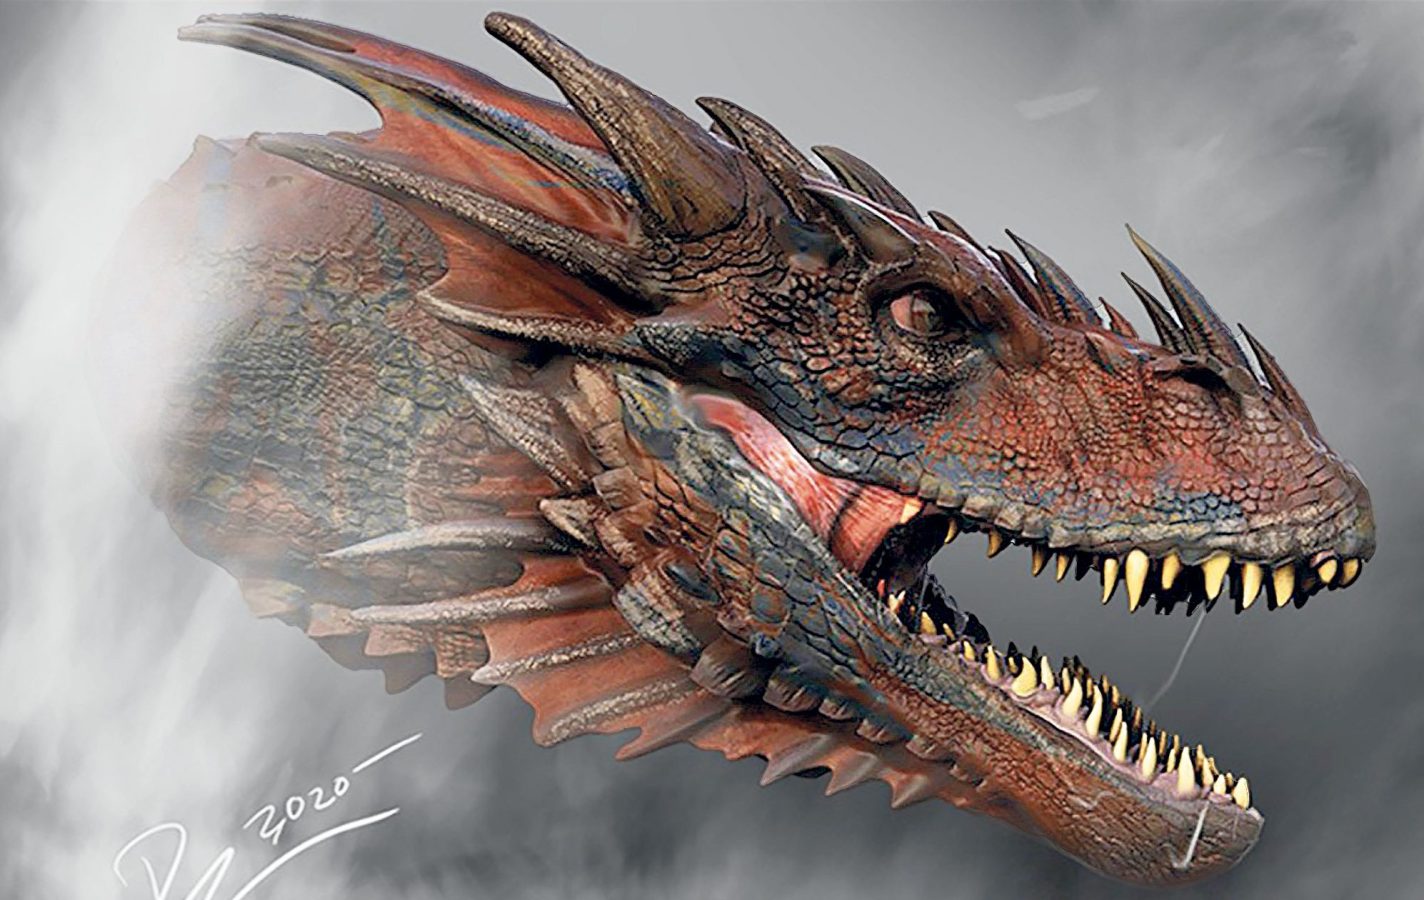 Dijital platformlar liginin bu yılki yeni oyuncusunda House of the Dragon’un ejder savaşlarını izleyeceğiz.